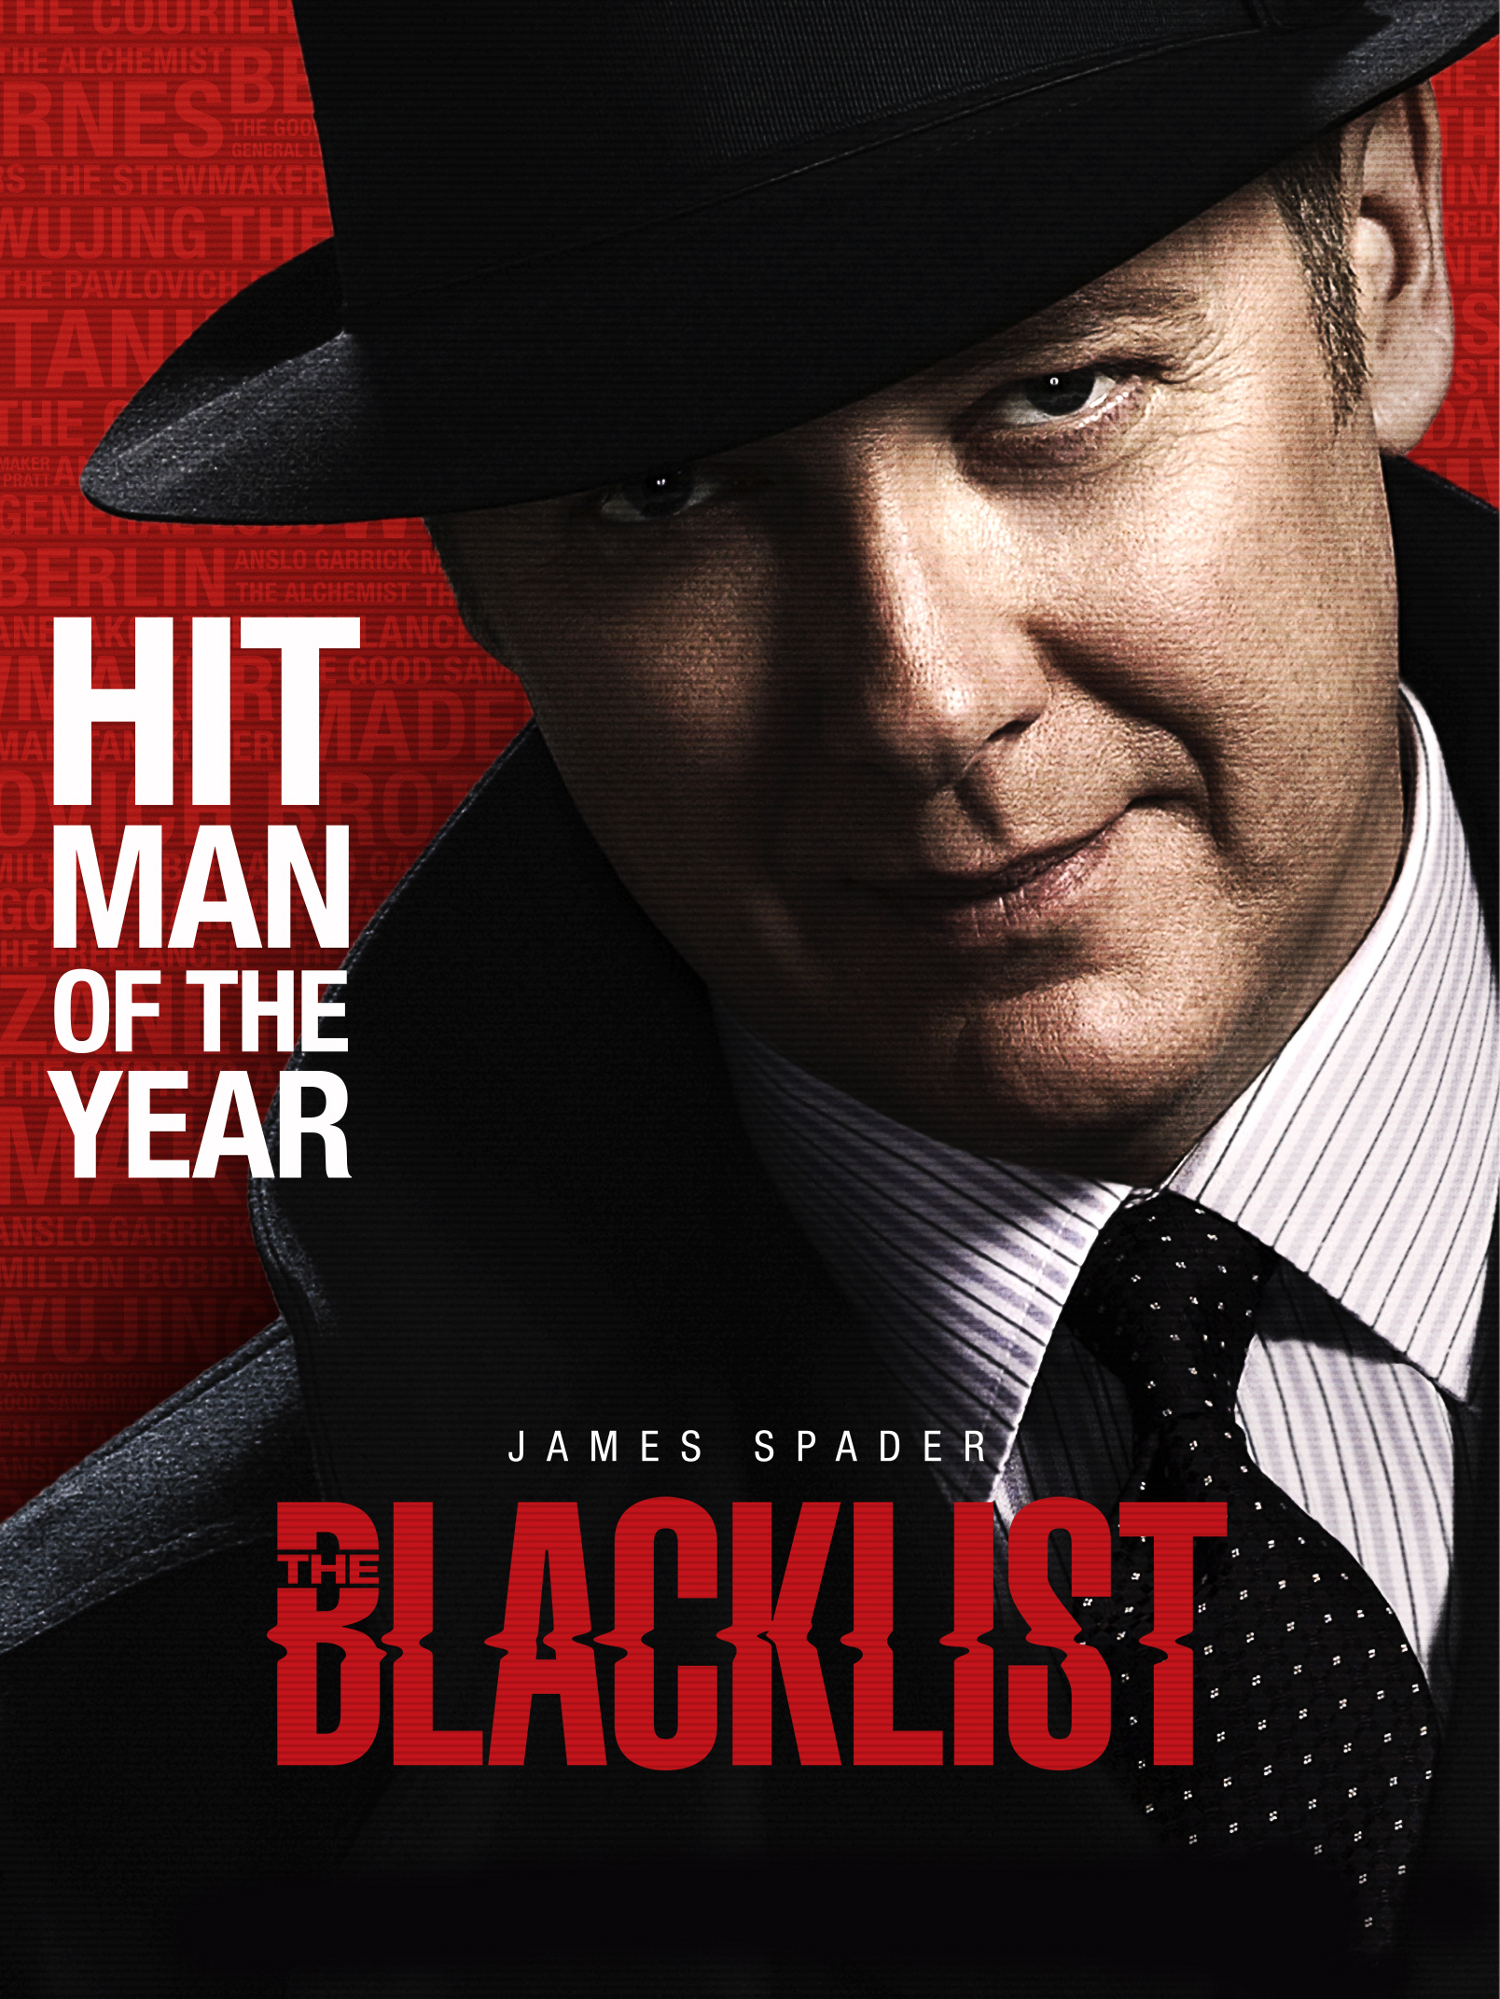 The Blacklist season 7 release date